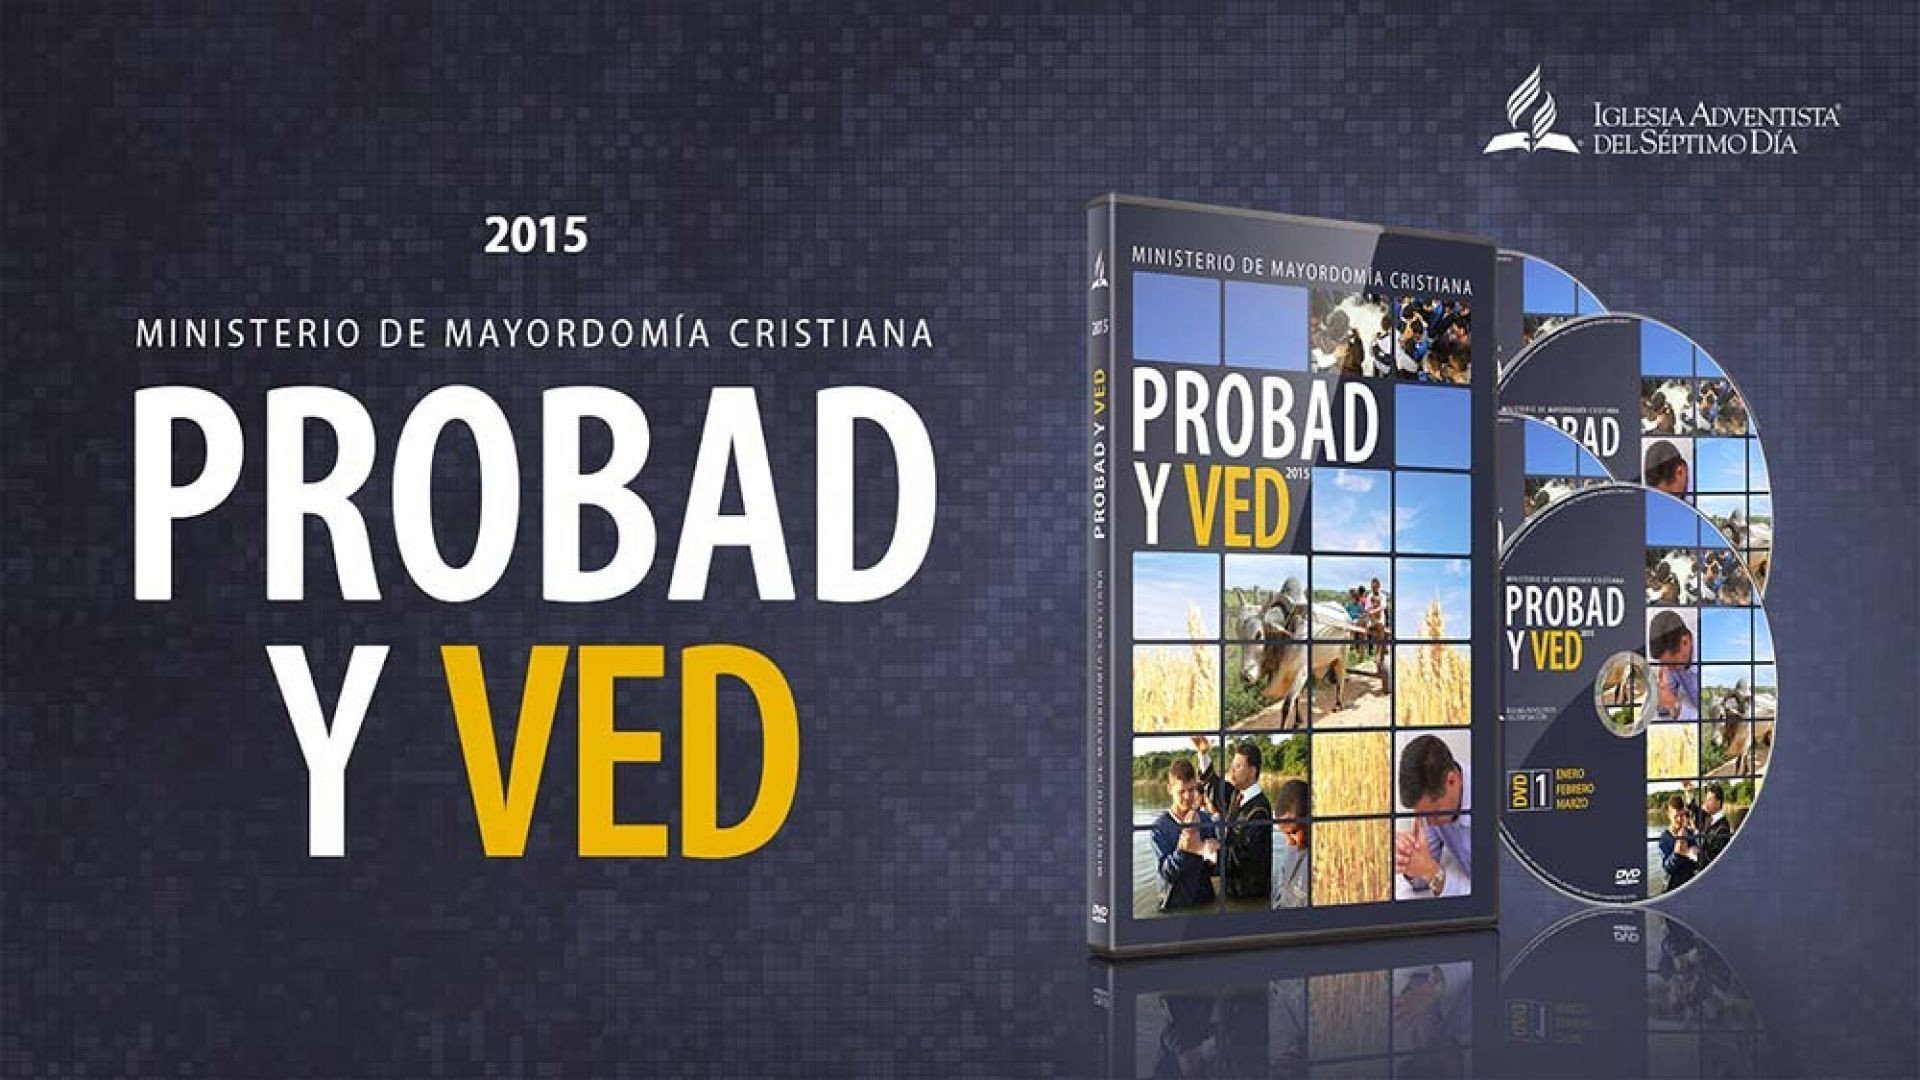 25/Abr. El libro de los cambios - Probad y Ved | Iglesia Adventista